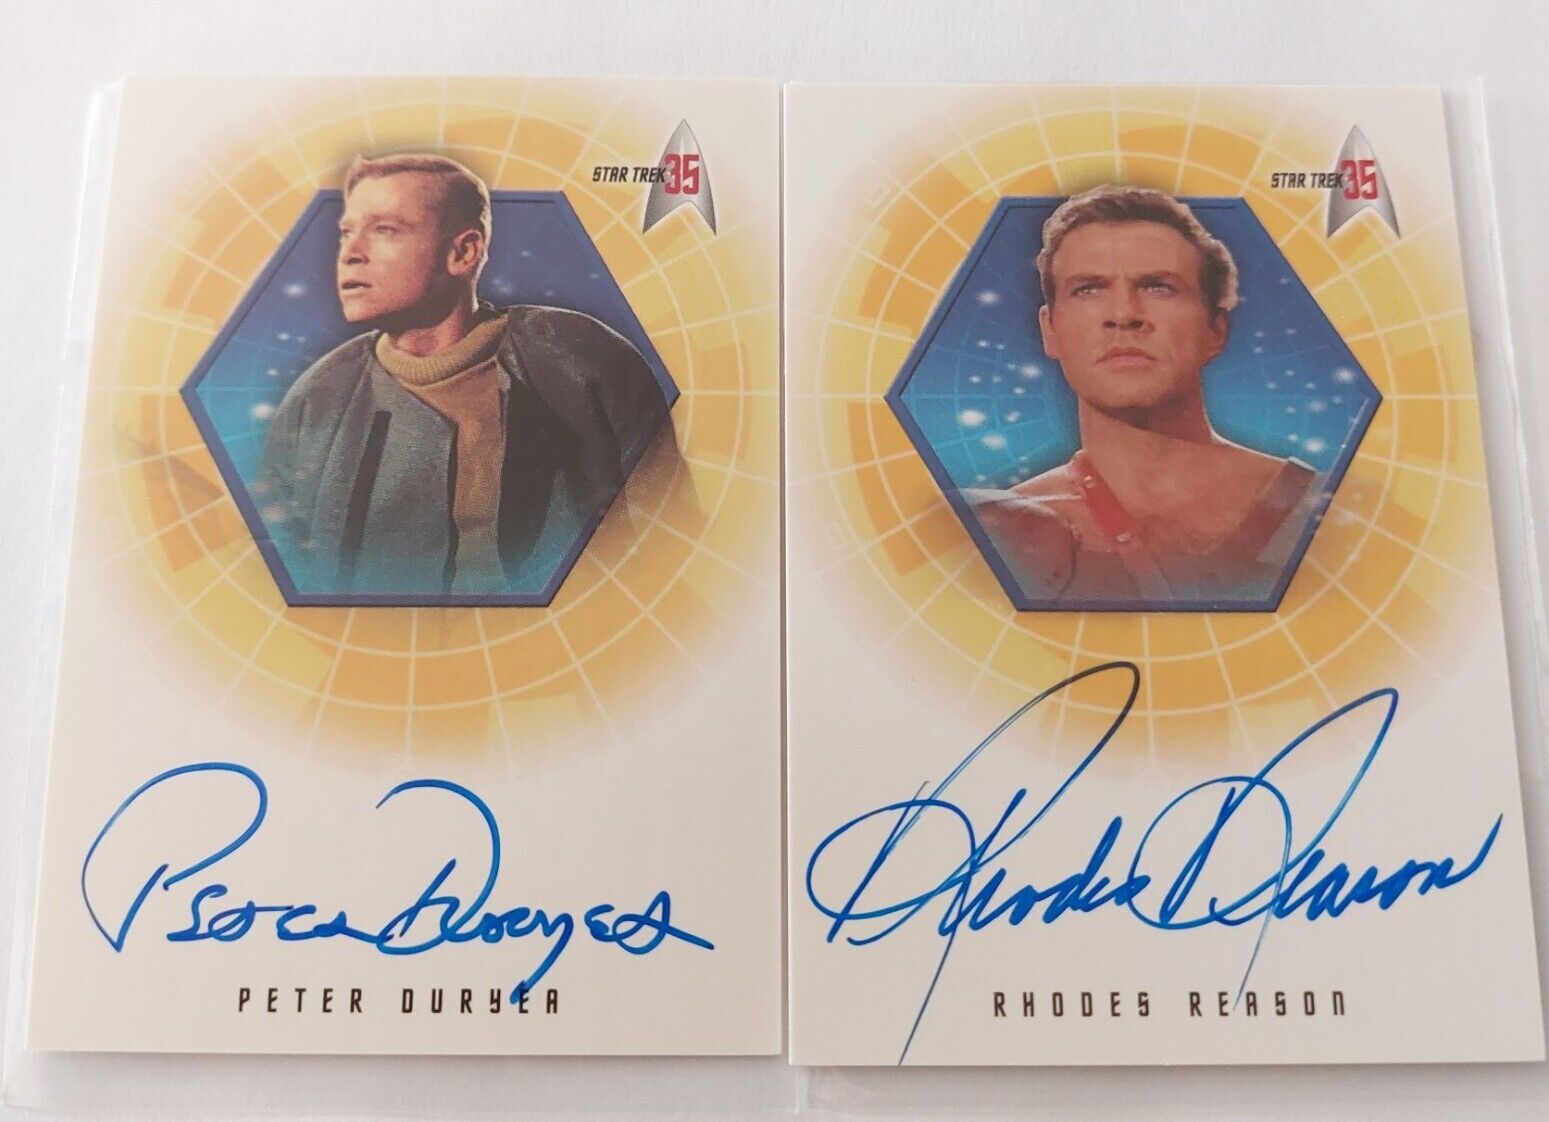 Star Trek TOS 35th Ann. both autograph cards A23 Rhodes Reason A32 Peter Duryea